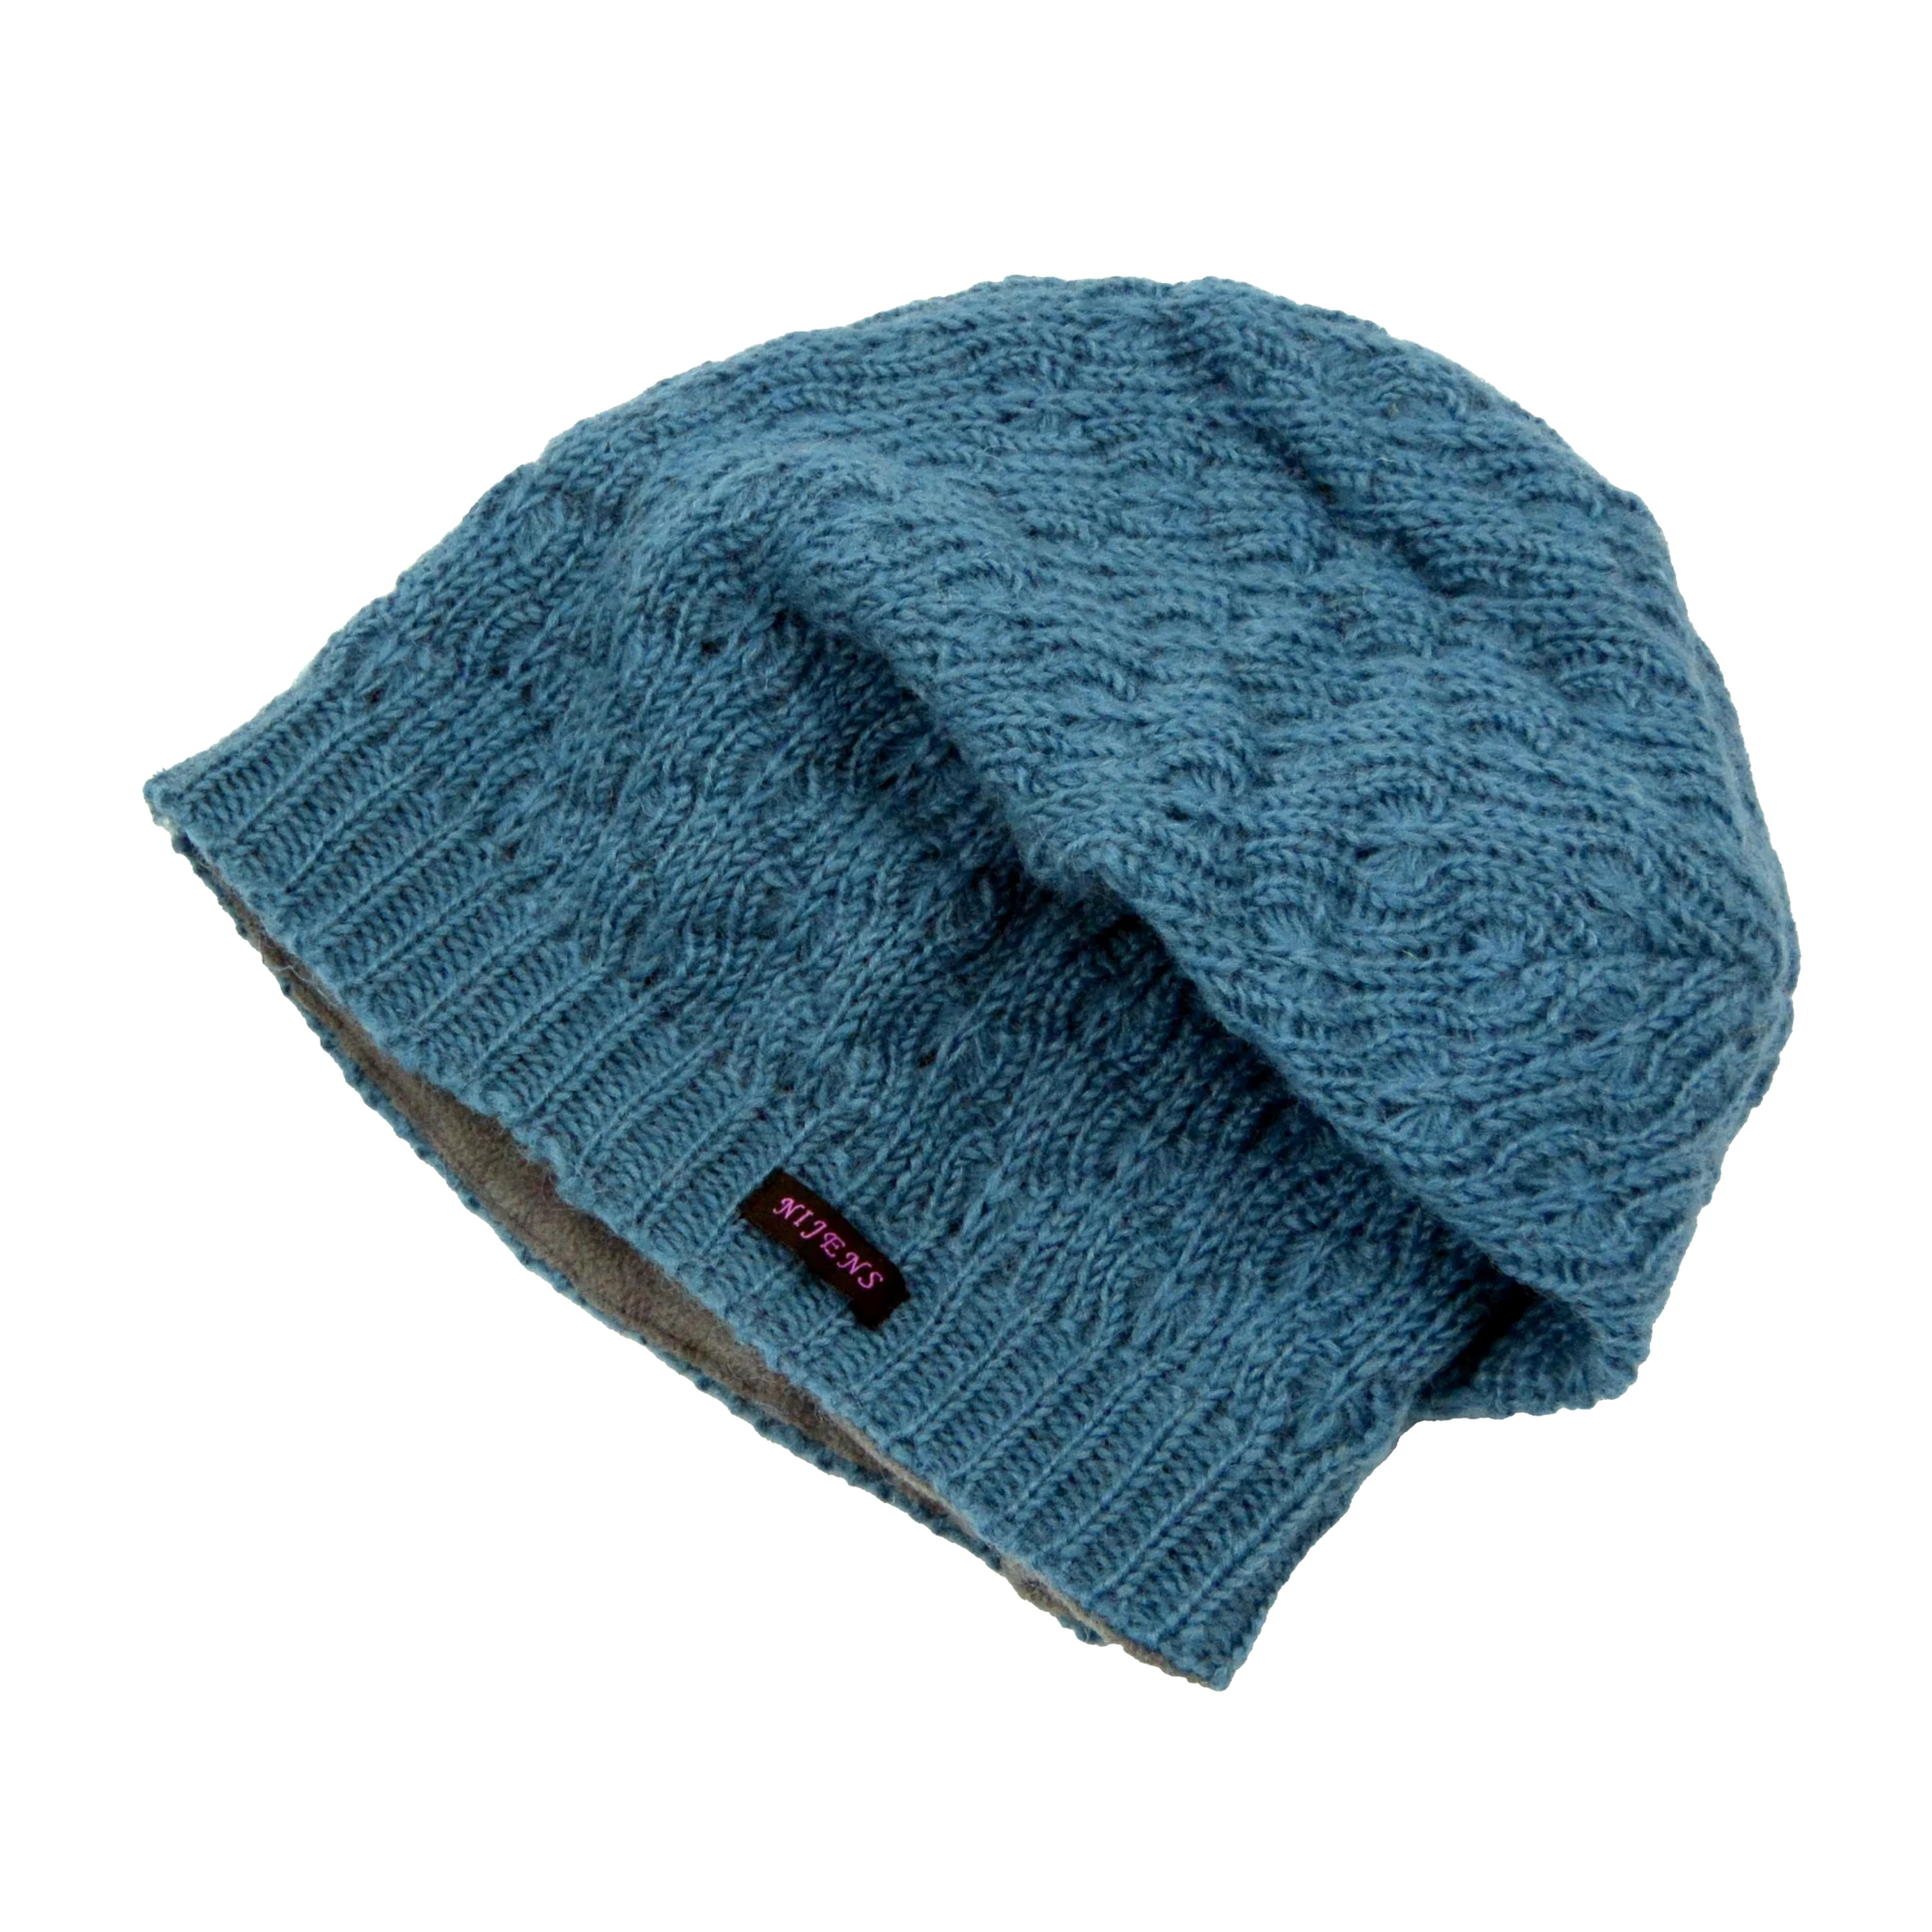 Long Beanie Mütze Handgestrickte aus Schurwolle Hellblau gefüttert mit Fleece. 